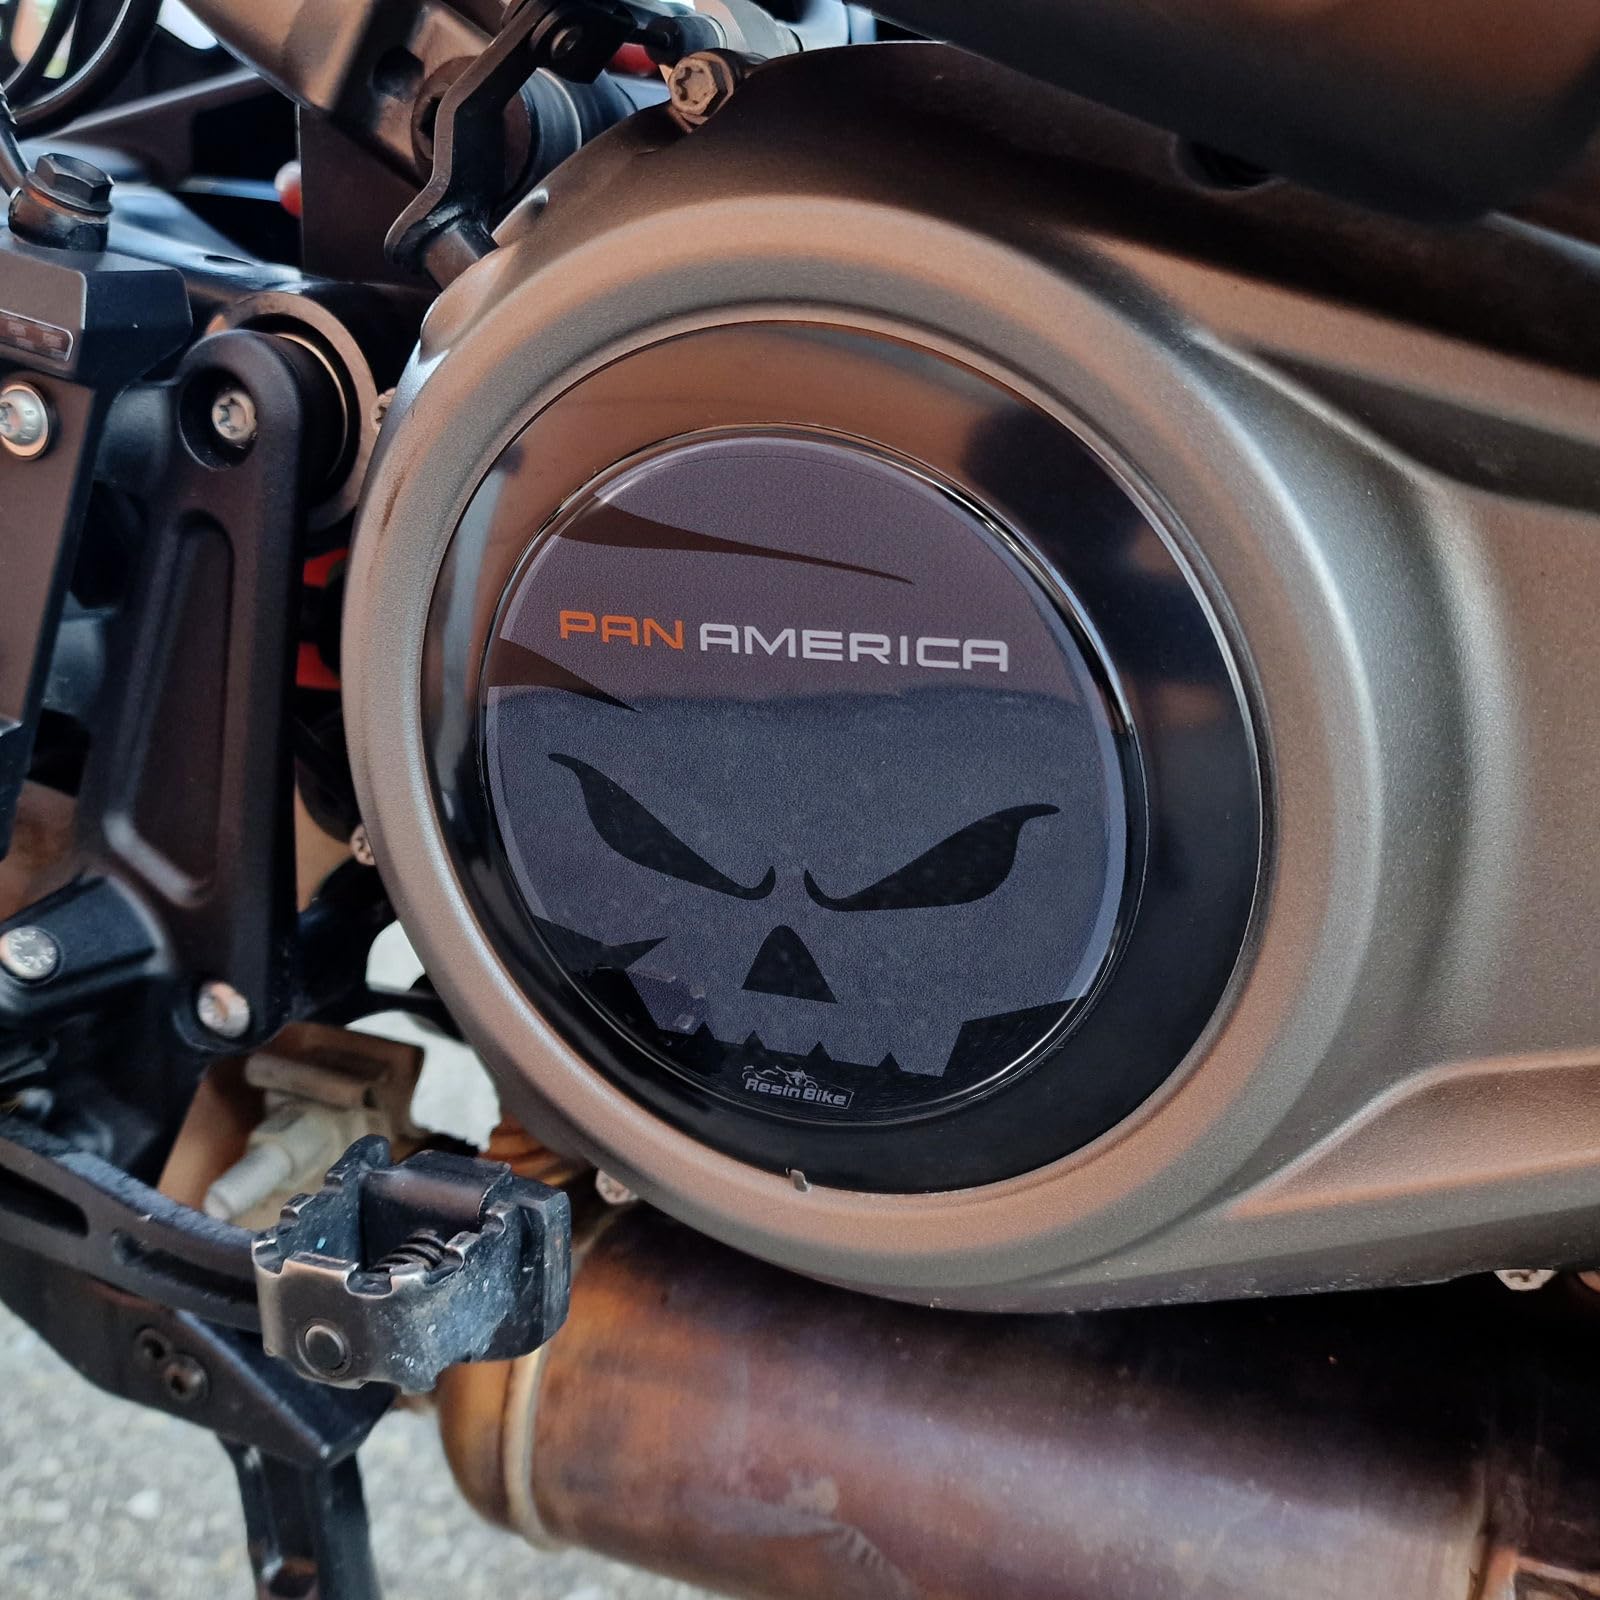 Resin Bike Aufkleber Motorrad Kompatibel Mit Harley Davidson Pan America 2023. Sie schützen den Variomatikgehäuse vor Stößen und Kratzern. Aufklebersatz 3D-Harzklebstoff - Stickers Made in Italy von Resin Bike